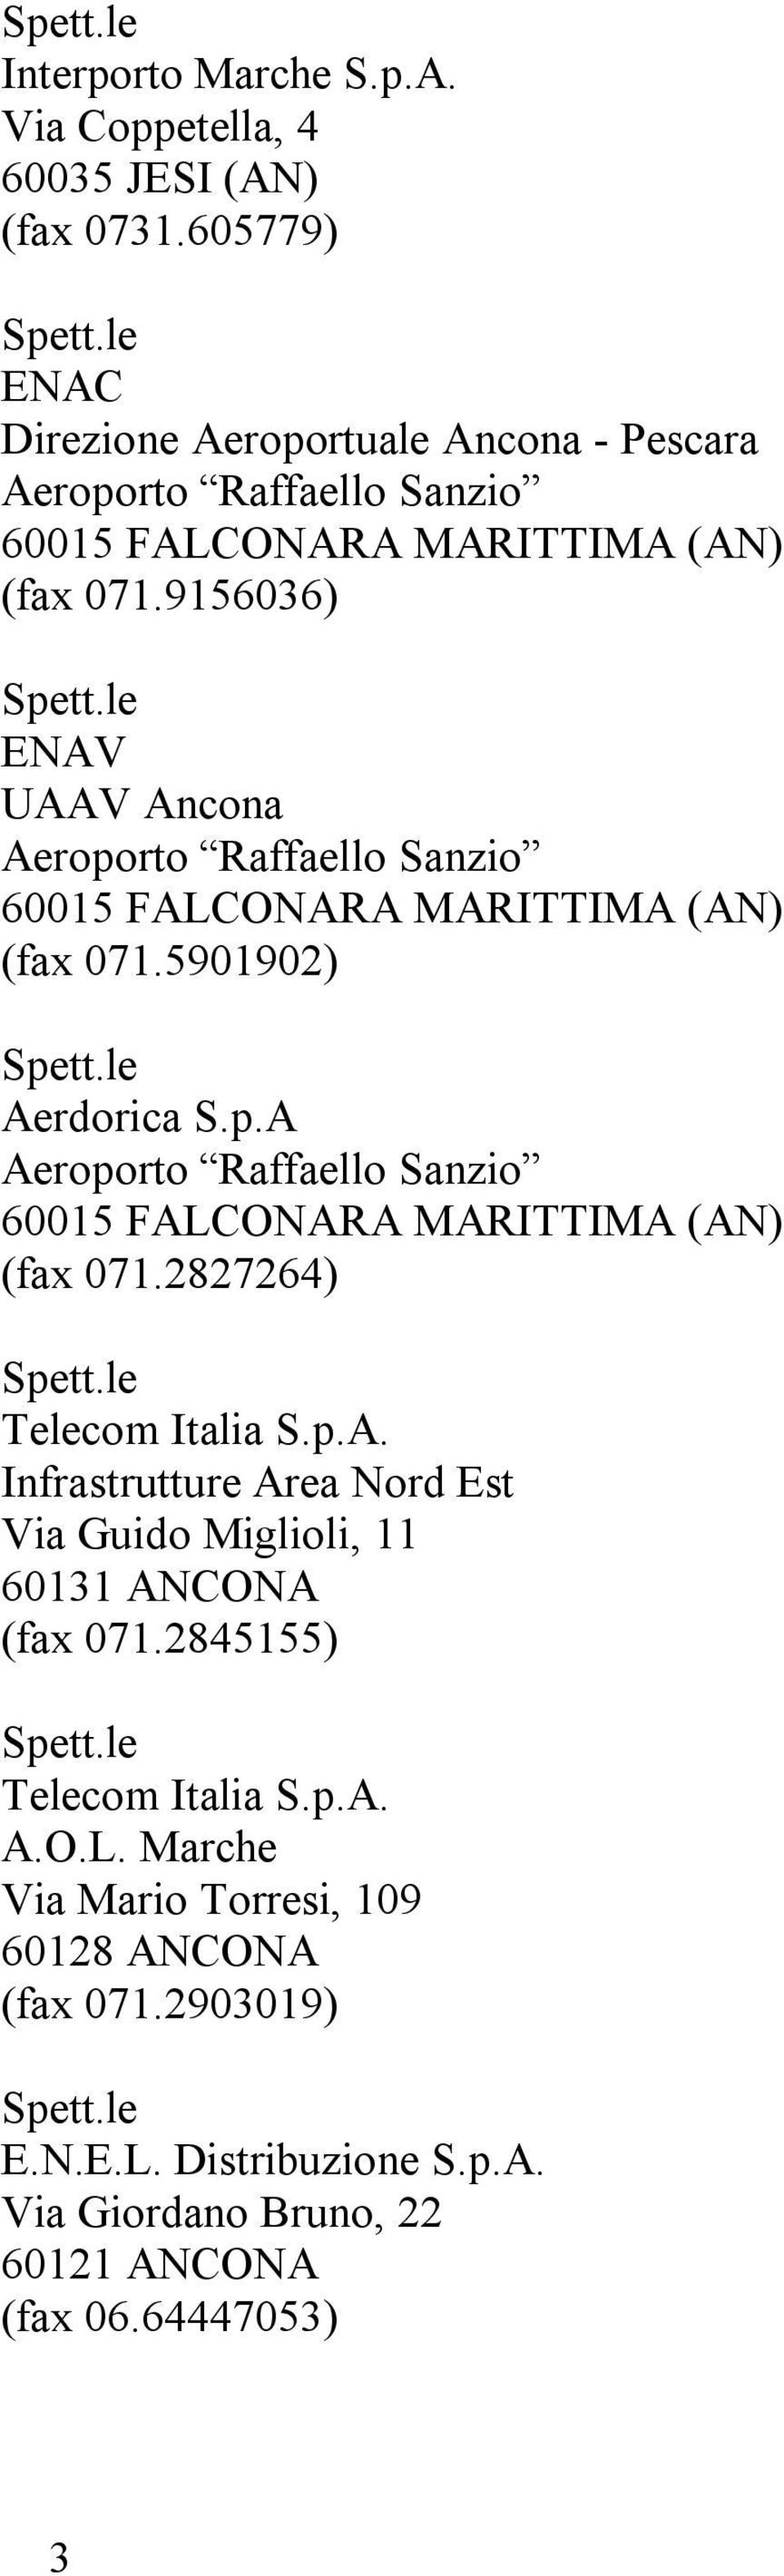 9156036) ENAV UAAV Ancona Aeroporto Raffaello Sanzio (fax 071.5901902) Aerdorica S.p.A Aeroporto Raffaello Sanzio (fax 071.